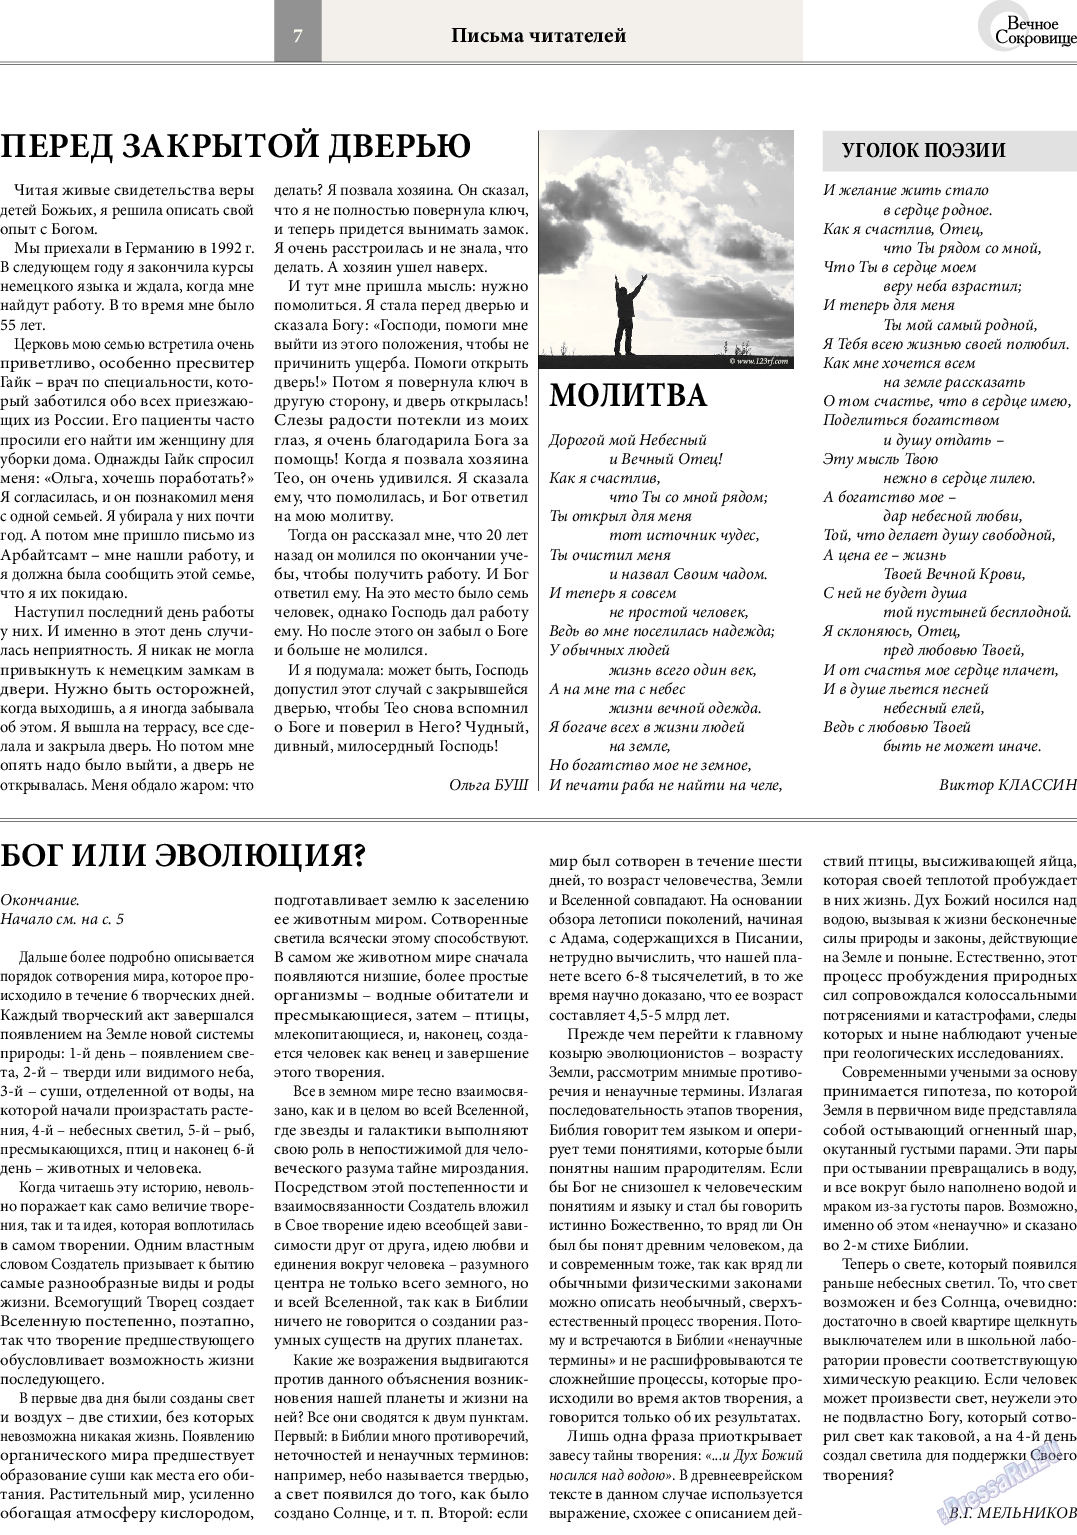 Вечное сокровище, газета. 2014 №4 стр.7